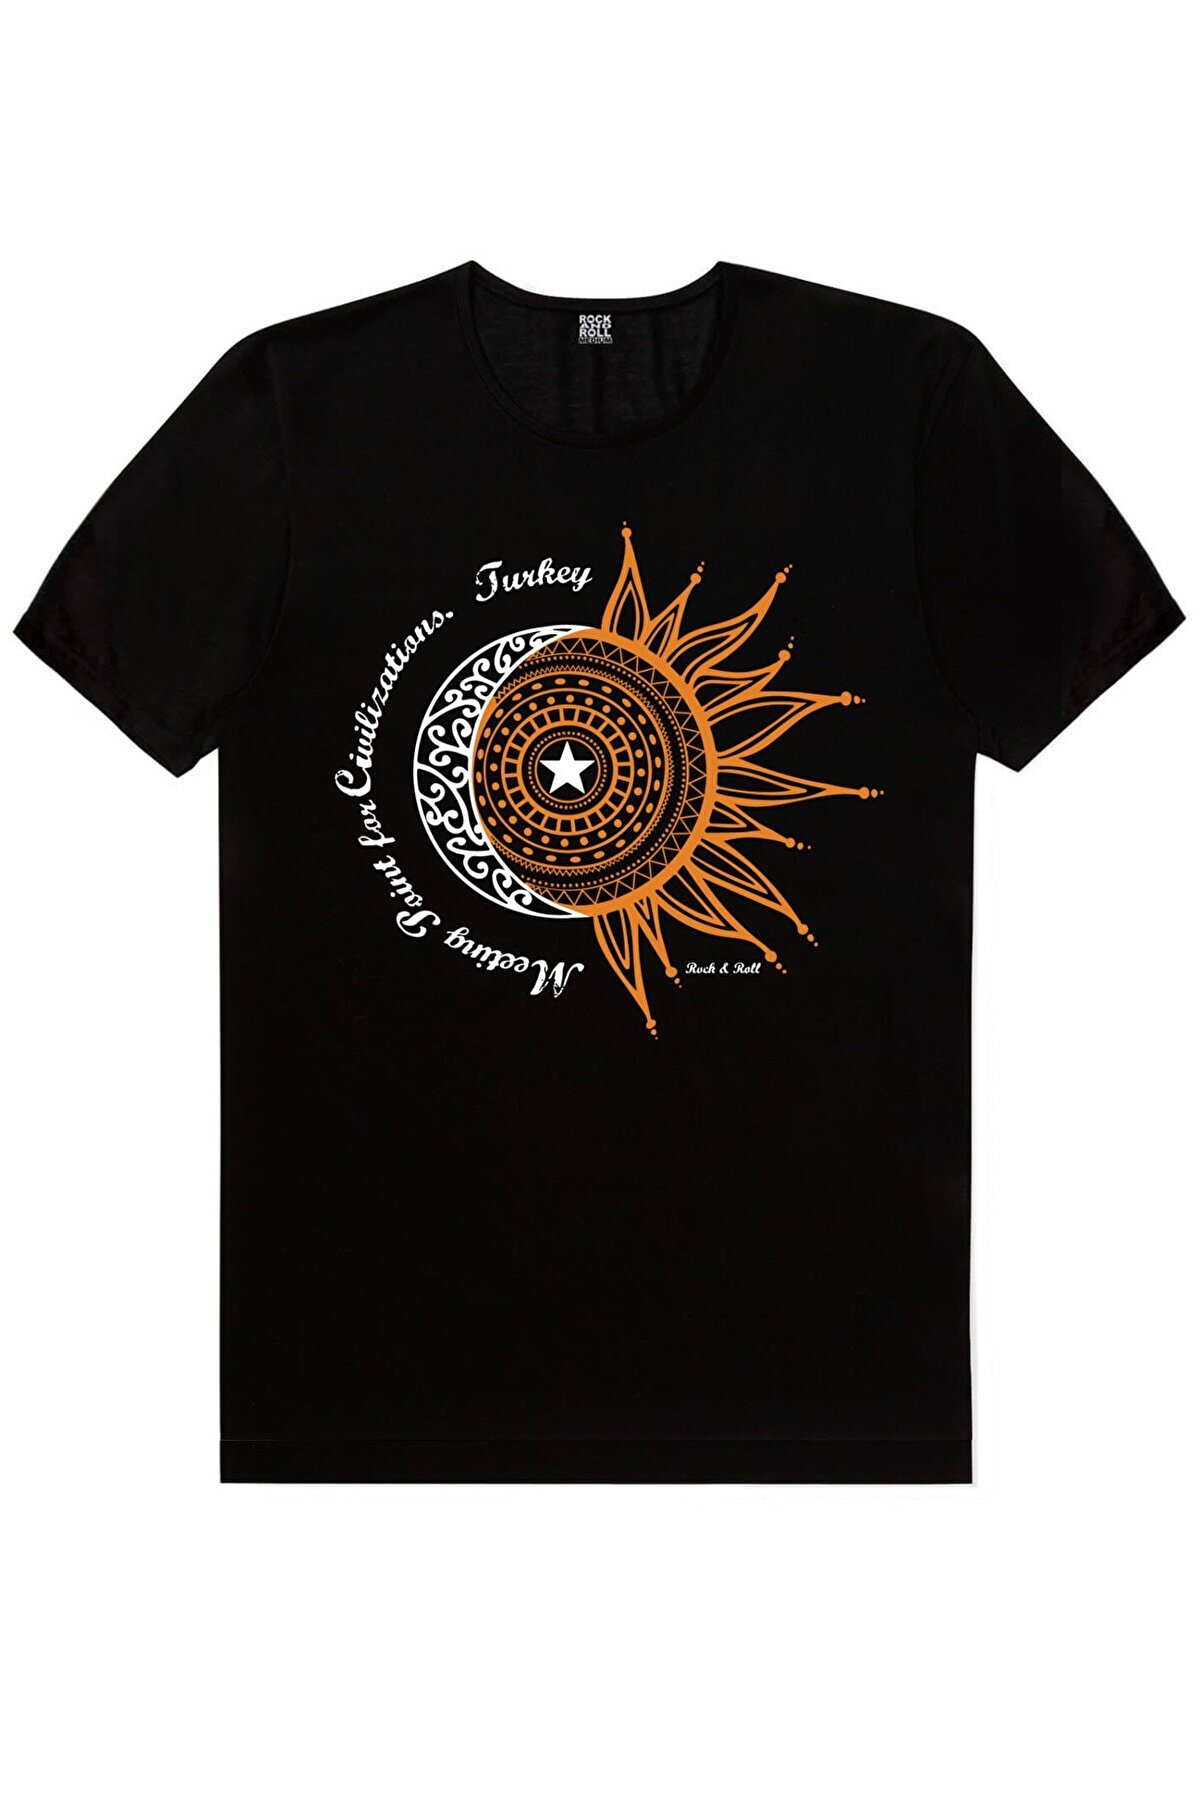 Türkiye Ay Yıldız Siyah, Türkiye Harfler Siyah, Istanbul Bisiklet Siyah Kadın 3'lü Eko Paket T-shirt